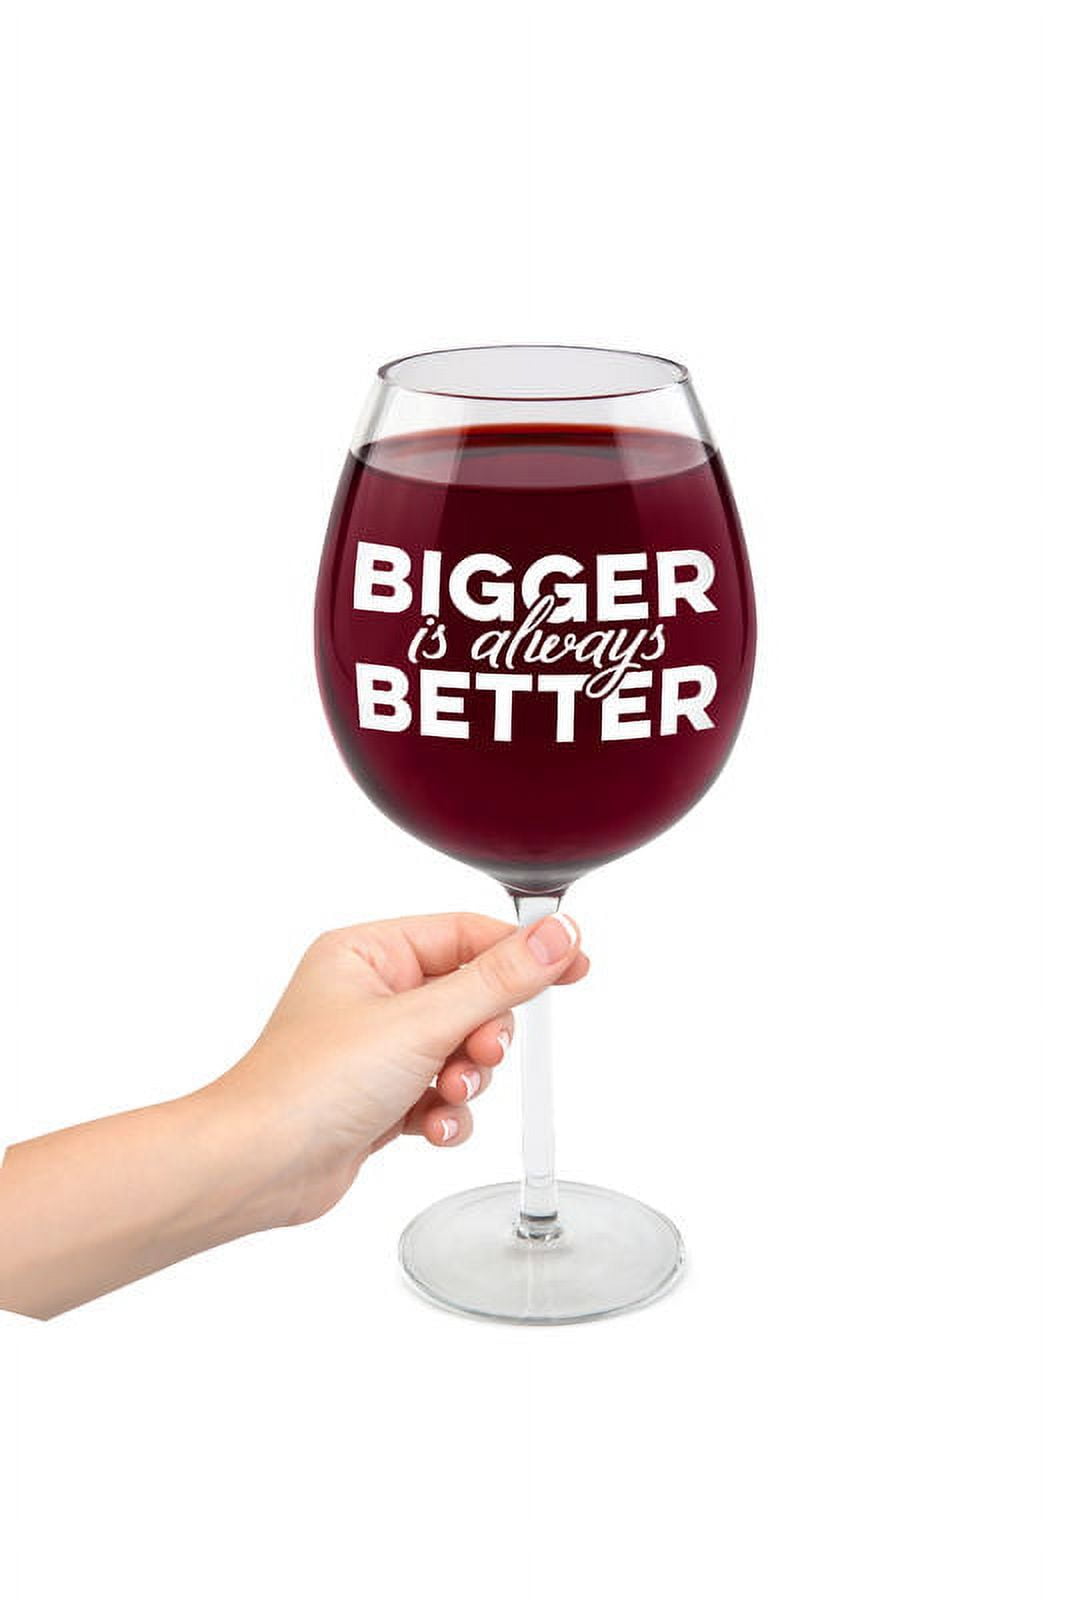 BigMouth Inc. Good Day XL Wine Glass